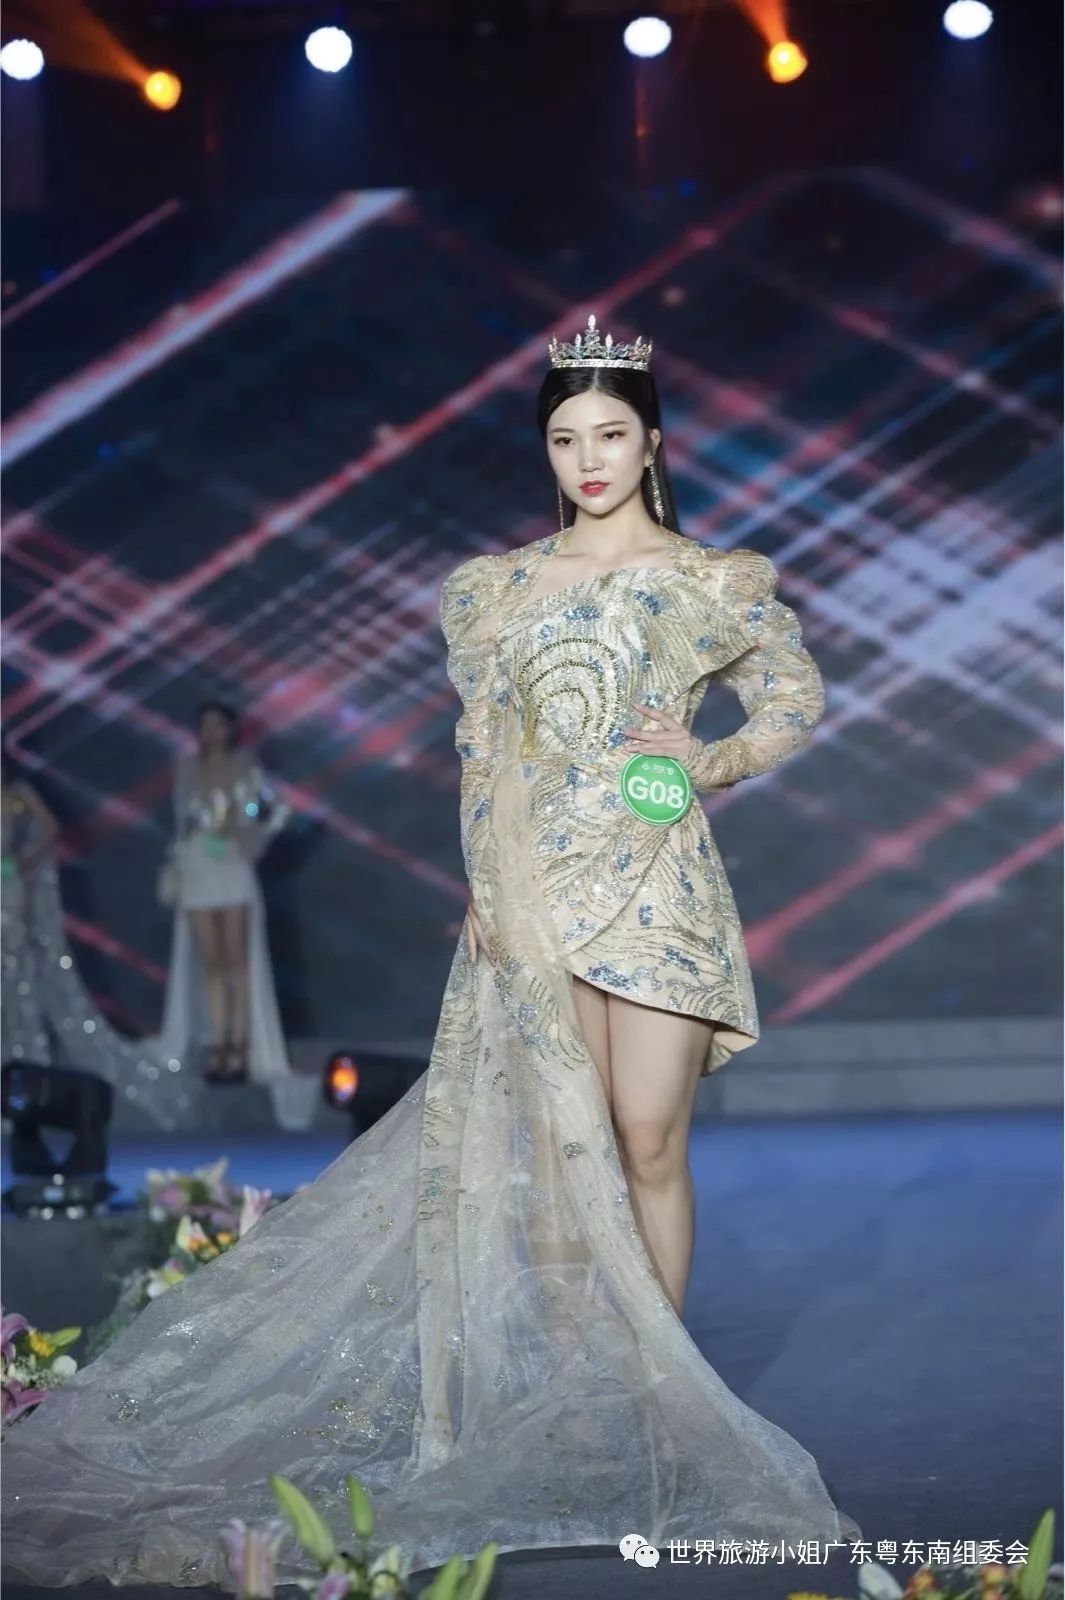 2019世界旅游小姐中国年度冠军总决赛 潮汕女孩成功获奖